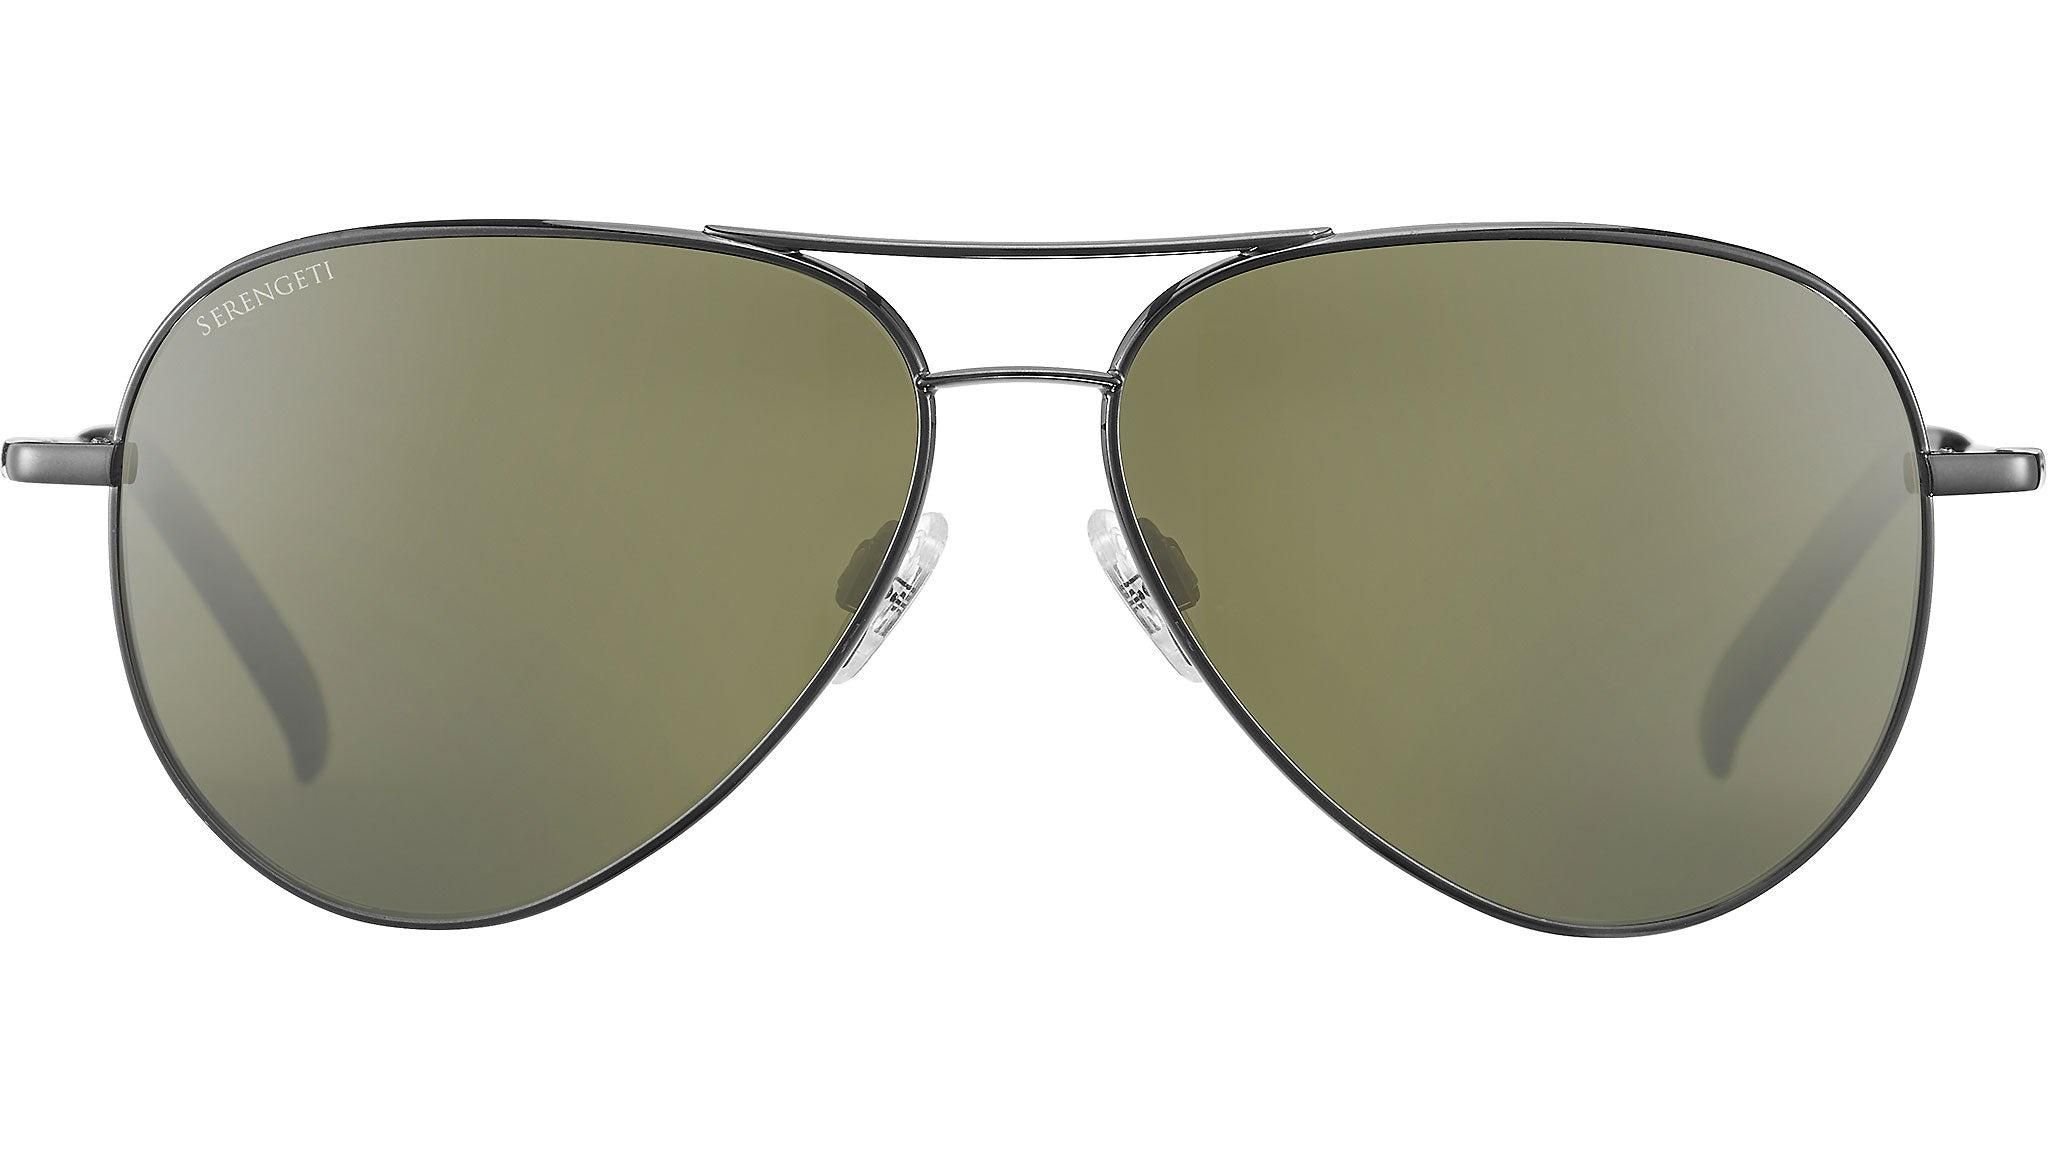  Serengeti Carrara 8294 sunglasses 